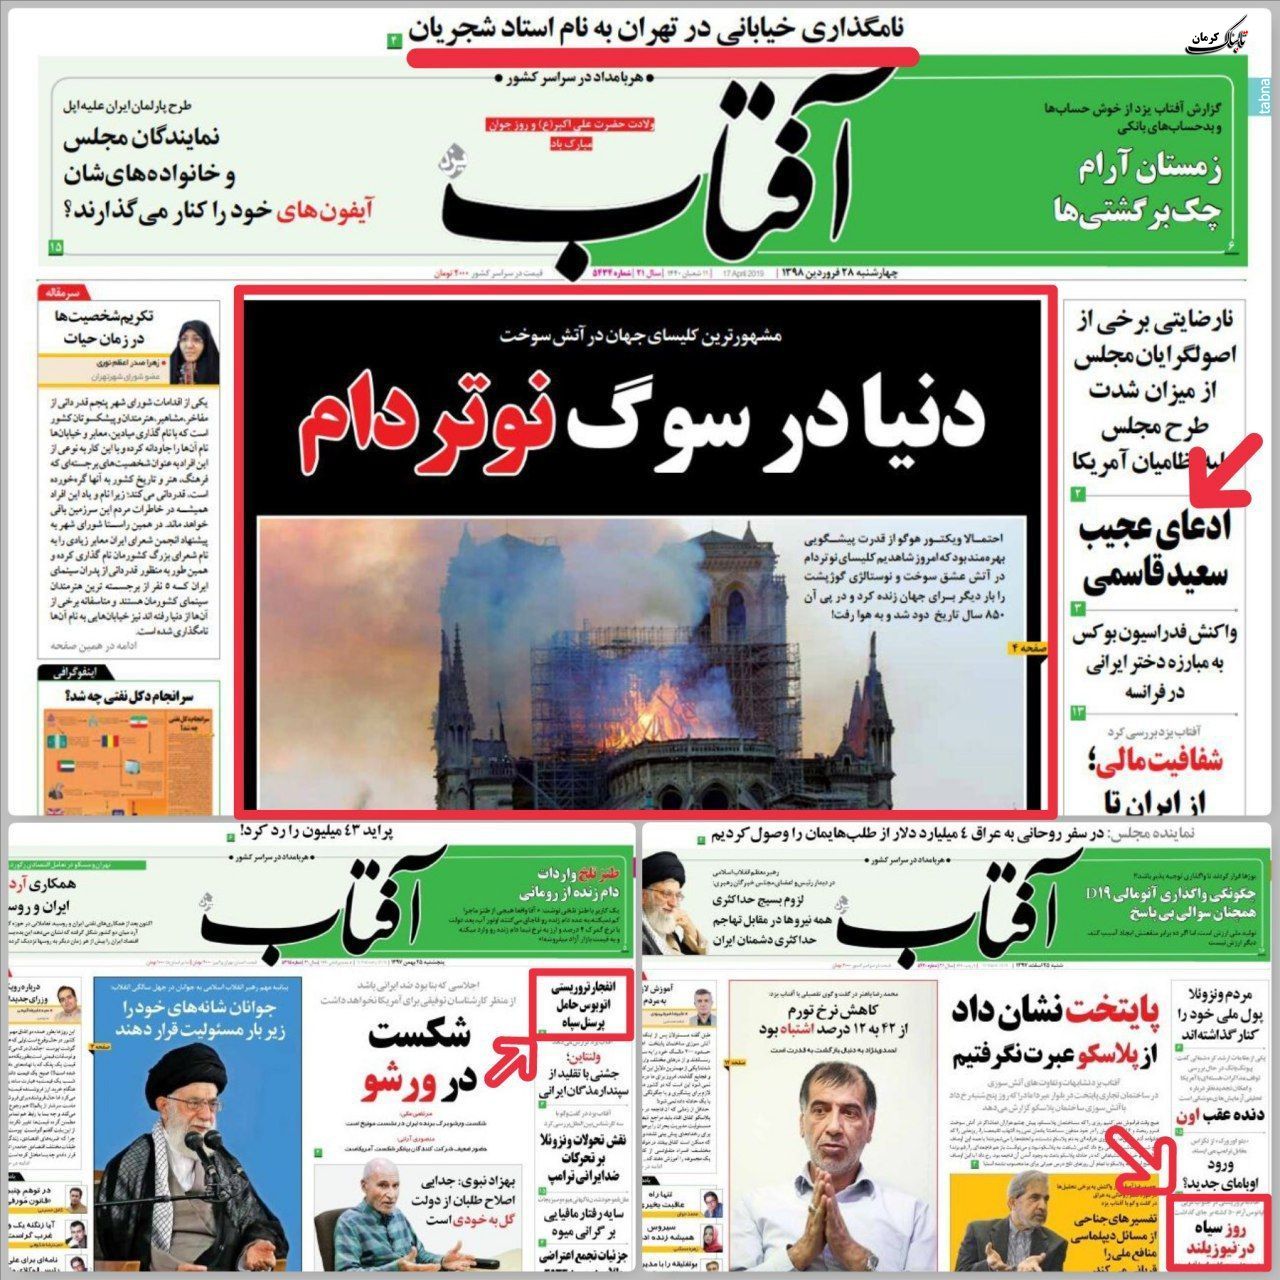 ارزش خبری از دیدگاه روزنامه آفتاب یزد